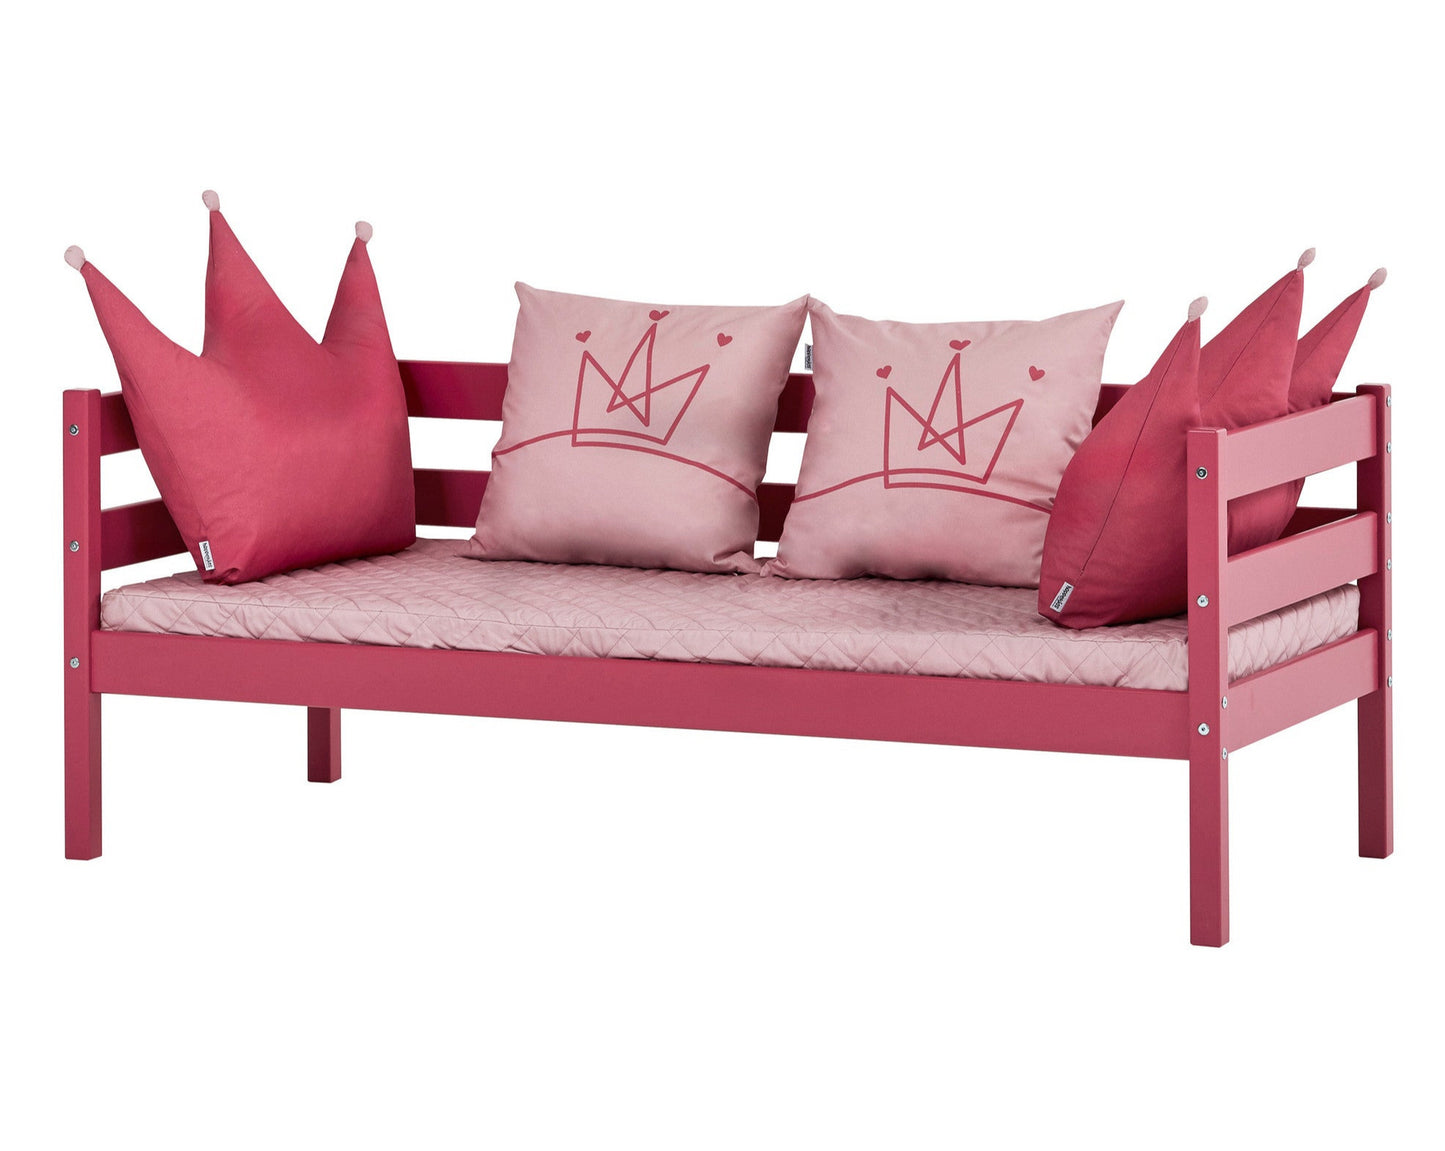 Princess - Cushion shaped like a Crown